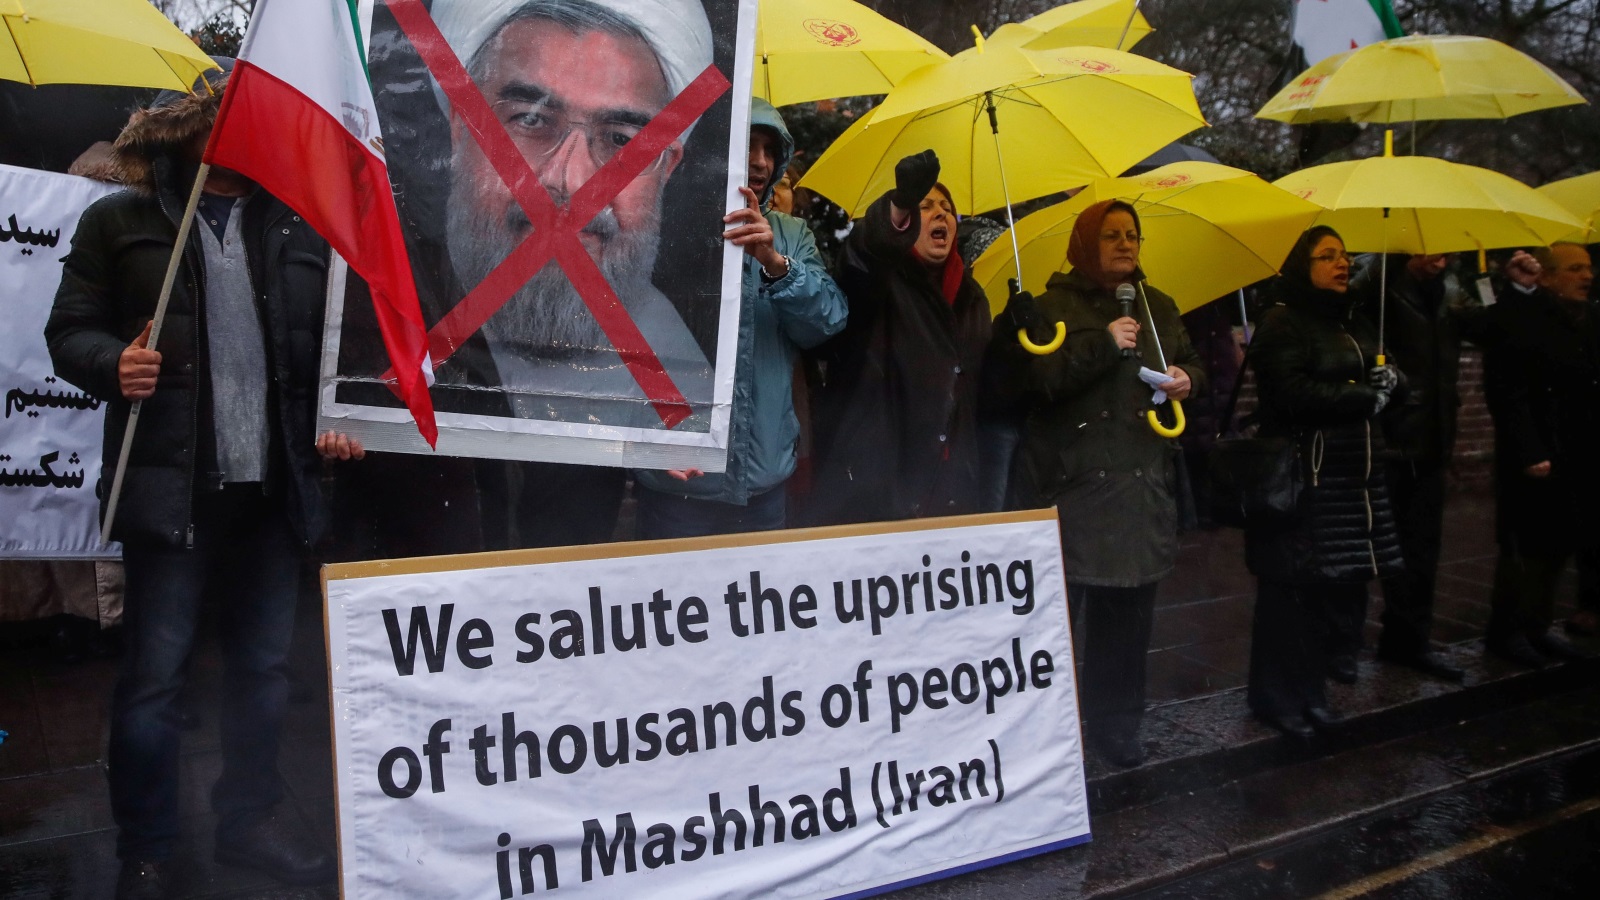 اليوم الشعب الإيراني تحرك، فهل هذه بداية النهاية، أم أن نظام إيران سيستطيع امتصاص نقمة الشعب بدهائه المعتاد؟